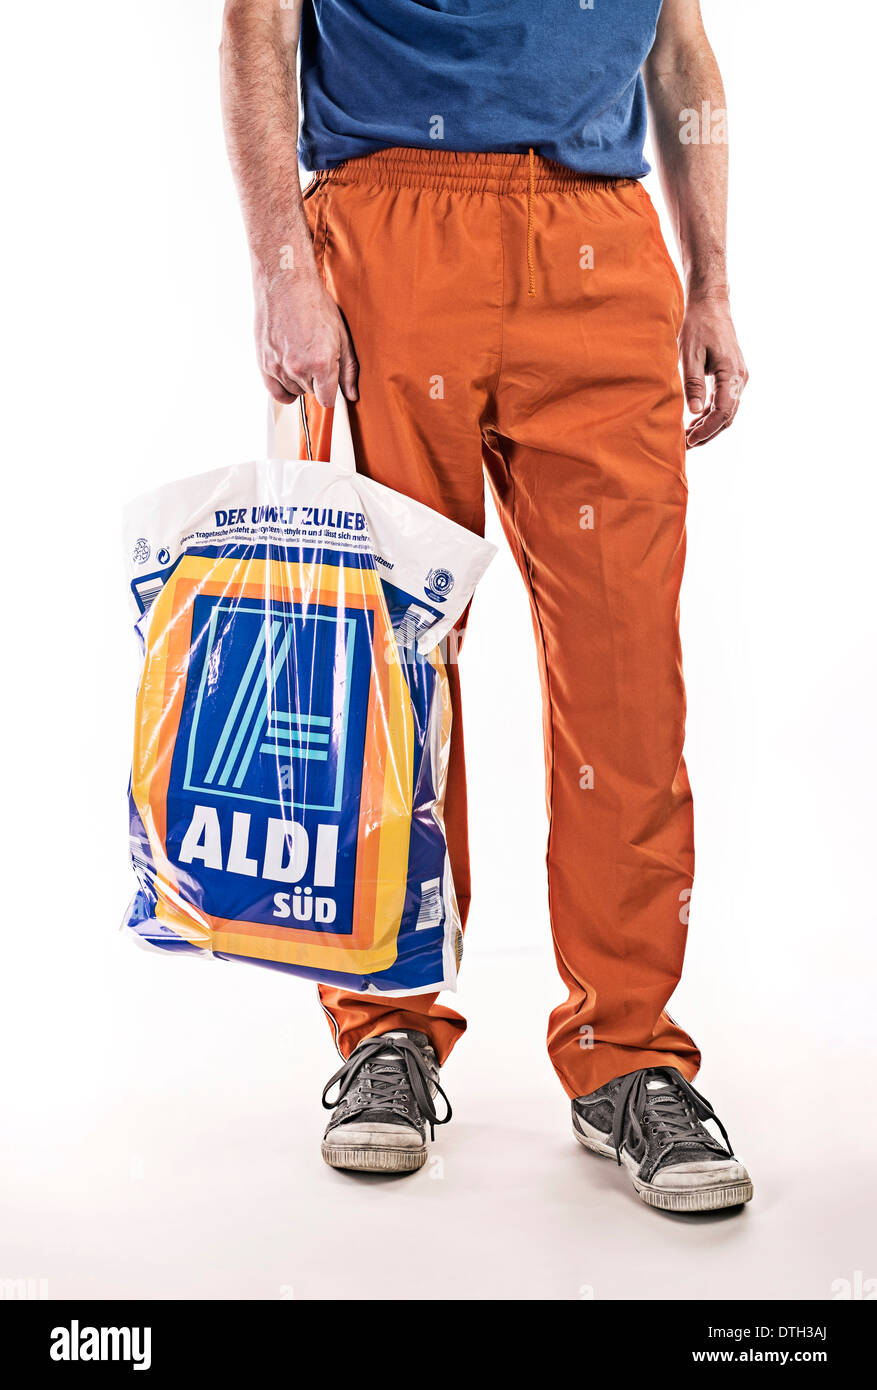 Unterkörper eines Mannes mit Jogginghose, tragen eine Plastiktüte der Lebensmittel-Discounter Aldi. Stockfoto